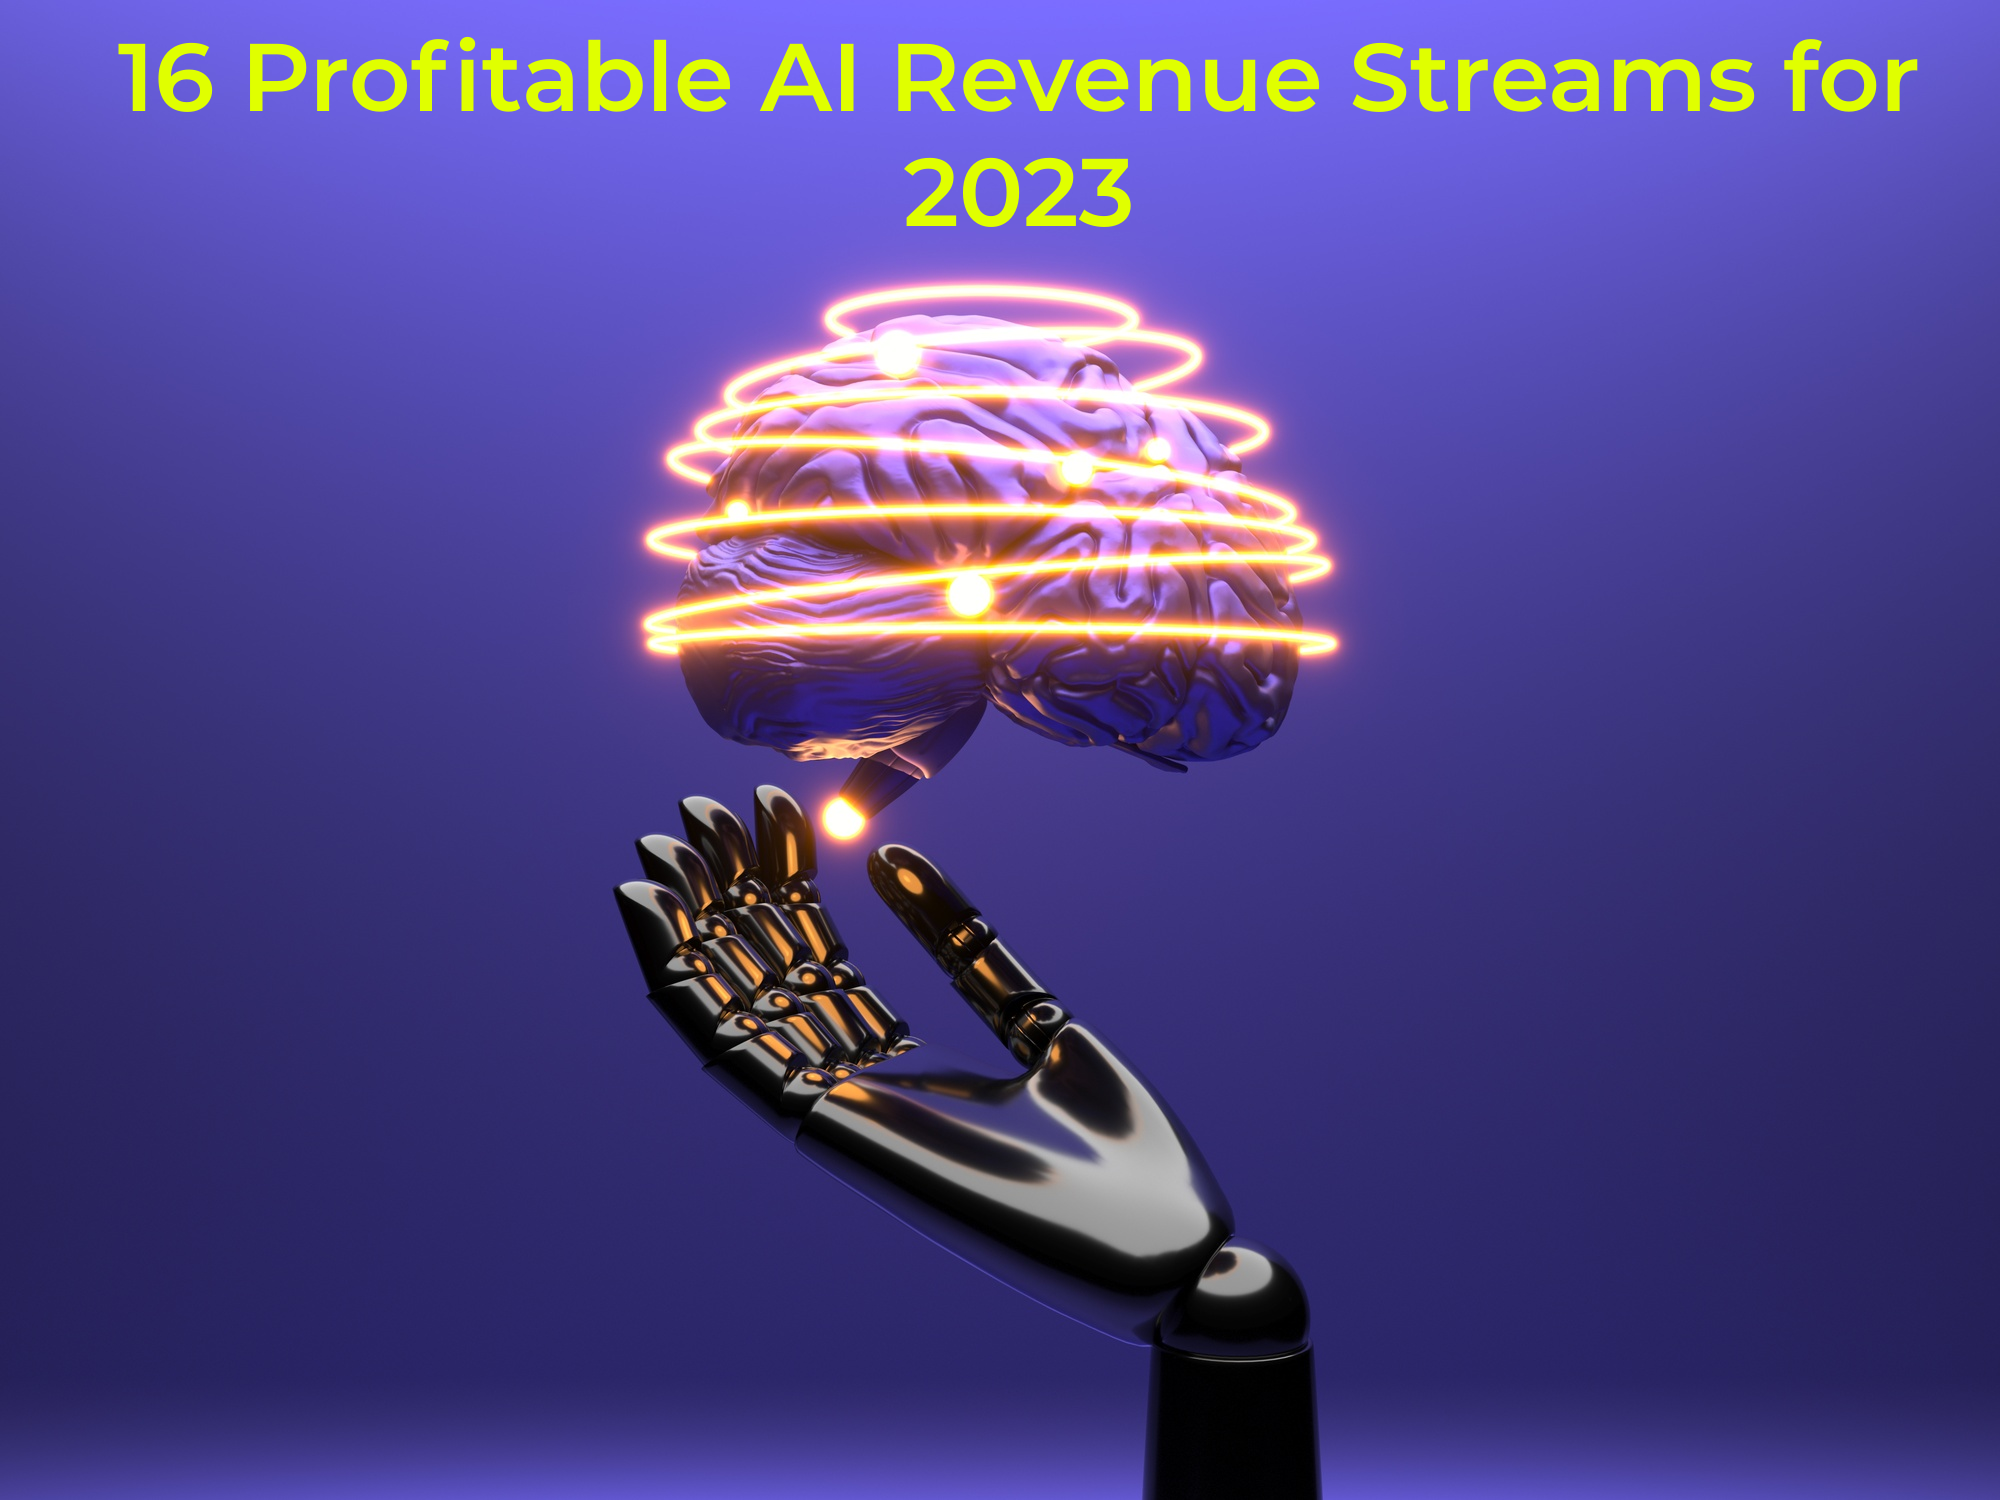 16 Profitable AI Revenue Streams for 2023